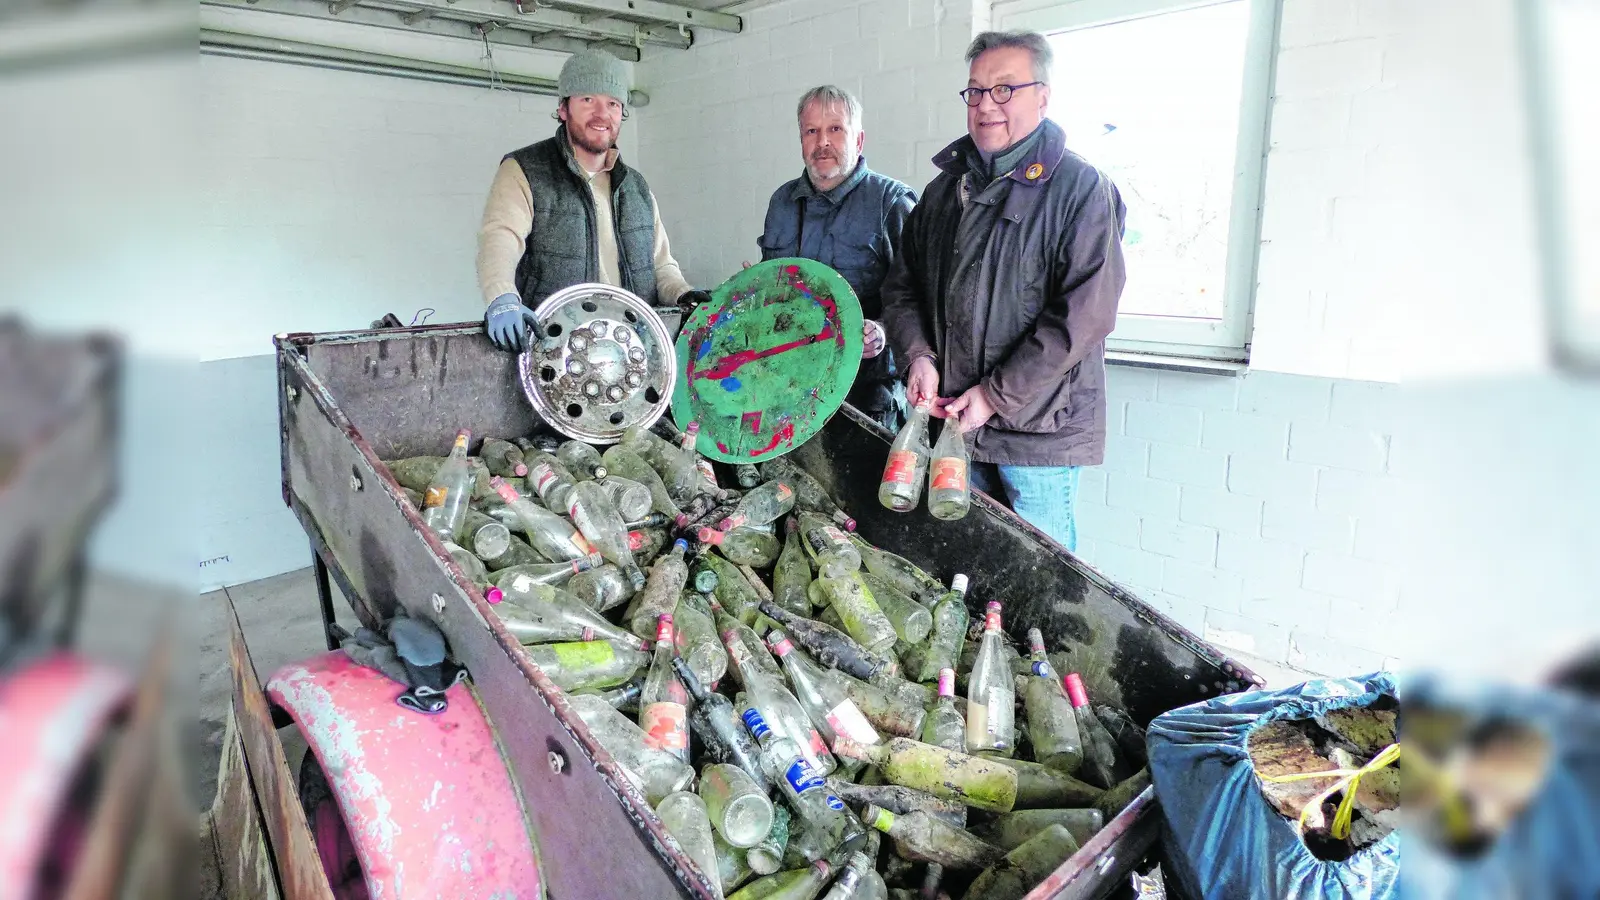 Am Bachbett sammeln sich allein über 160 leere Flaschen (Foto: red)